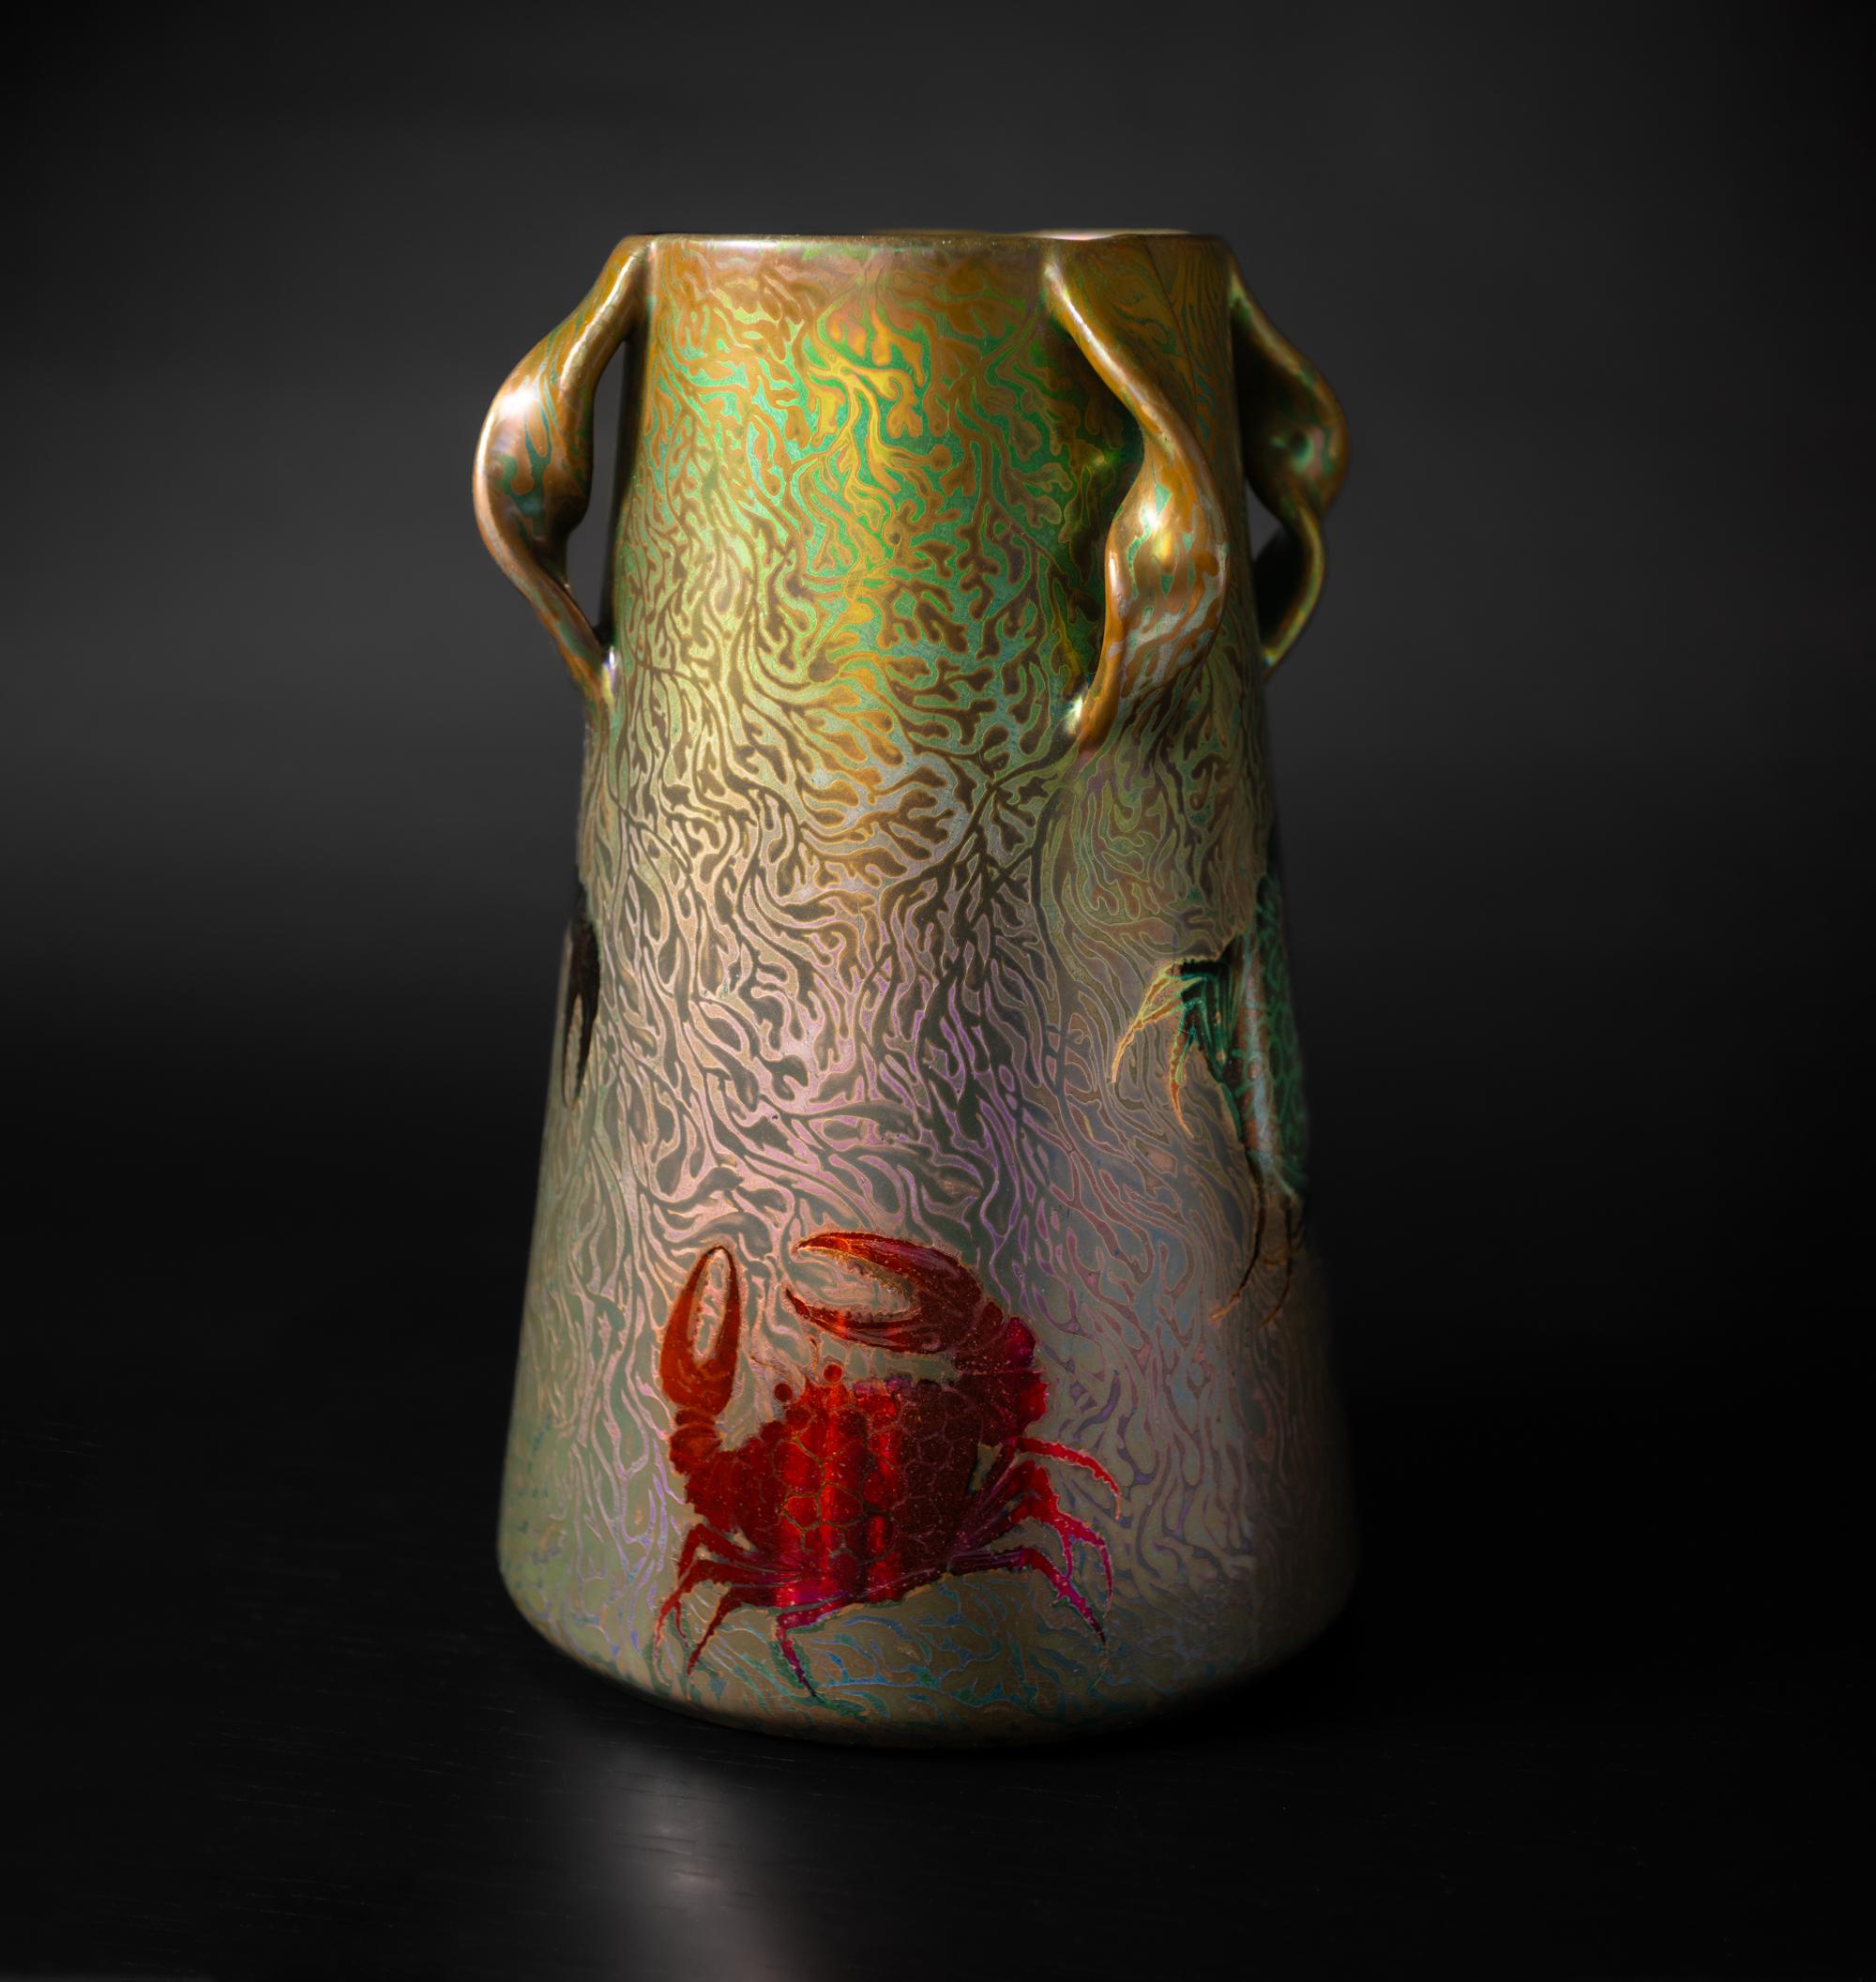 Un encuentro con la cerámica esmaltada de Massier es un embarque en un viaje de color ácido, el tipo de exploración que inspira una profunda reflexión y exige transparencia. Clement Massier, ceramista consumado nacido en el seno de una familia